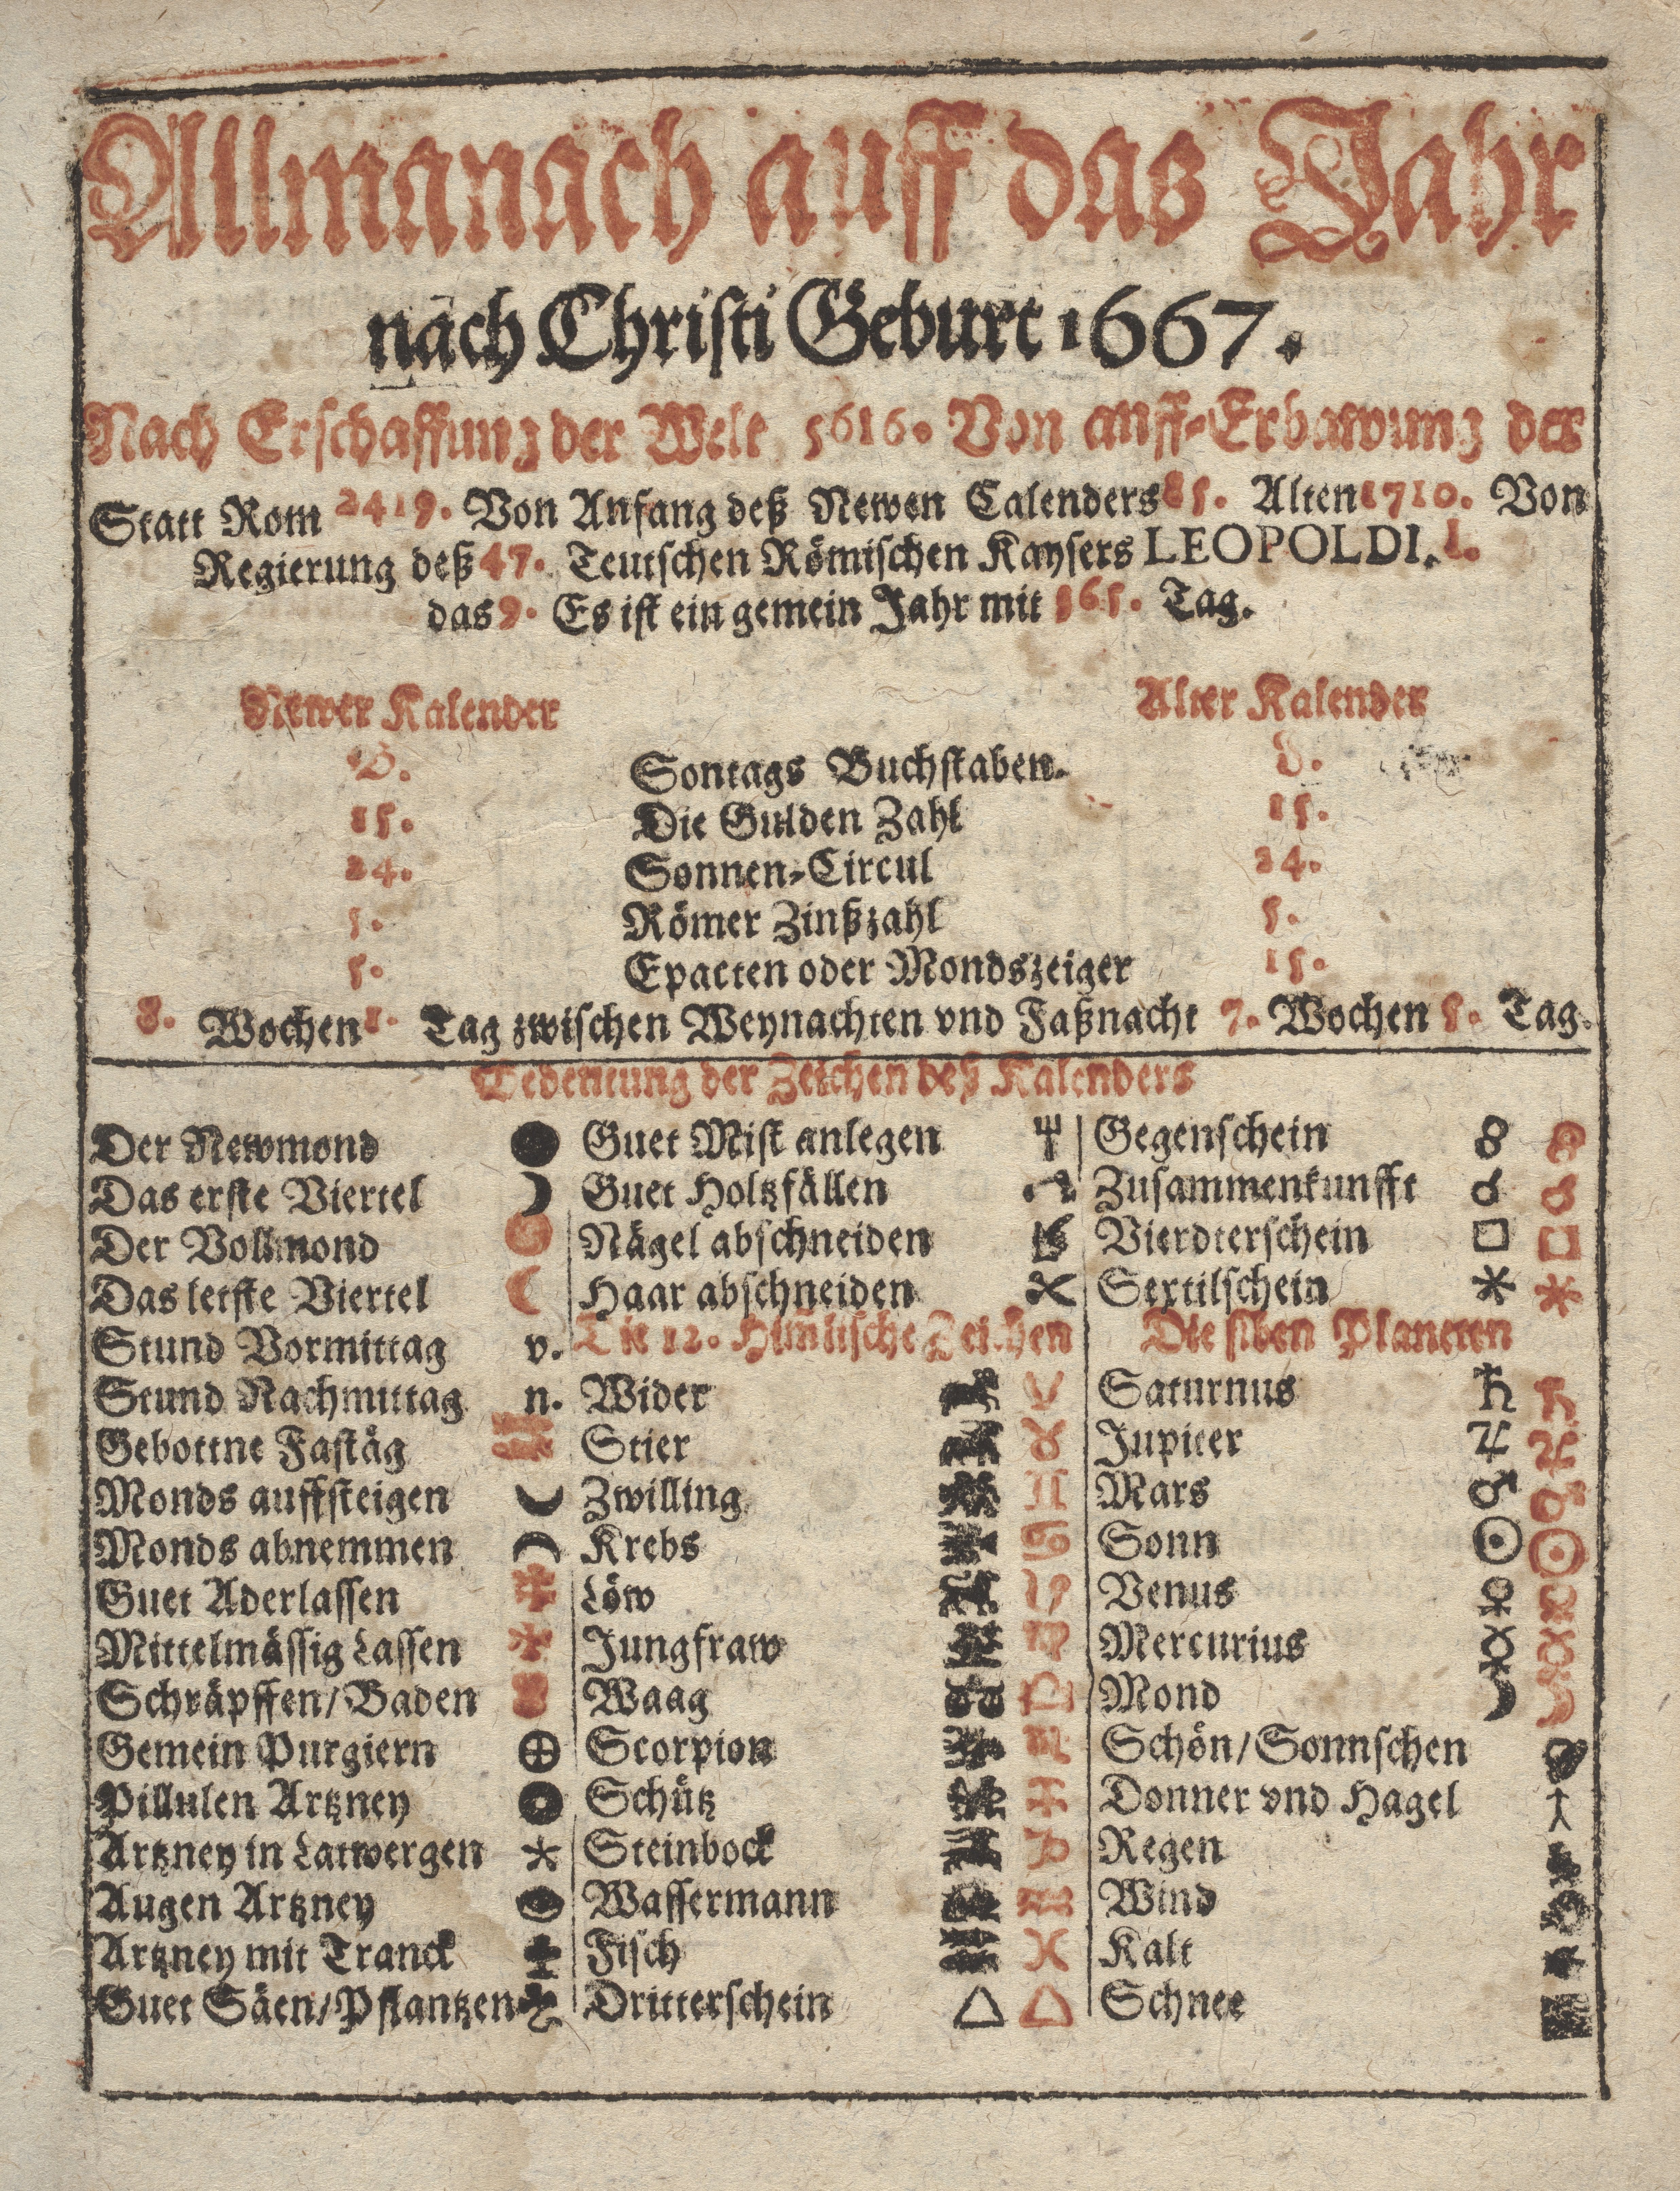 Stiftsarchiv St.Gallen, X 133, Schreibkalender 1667, Symbole